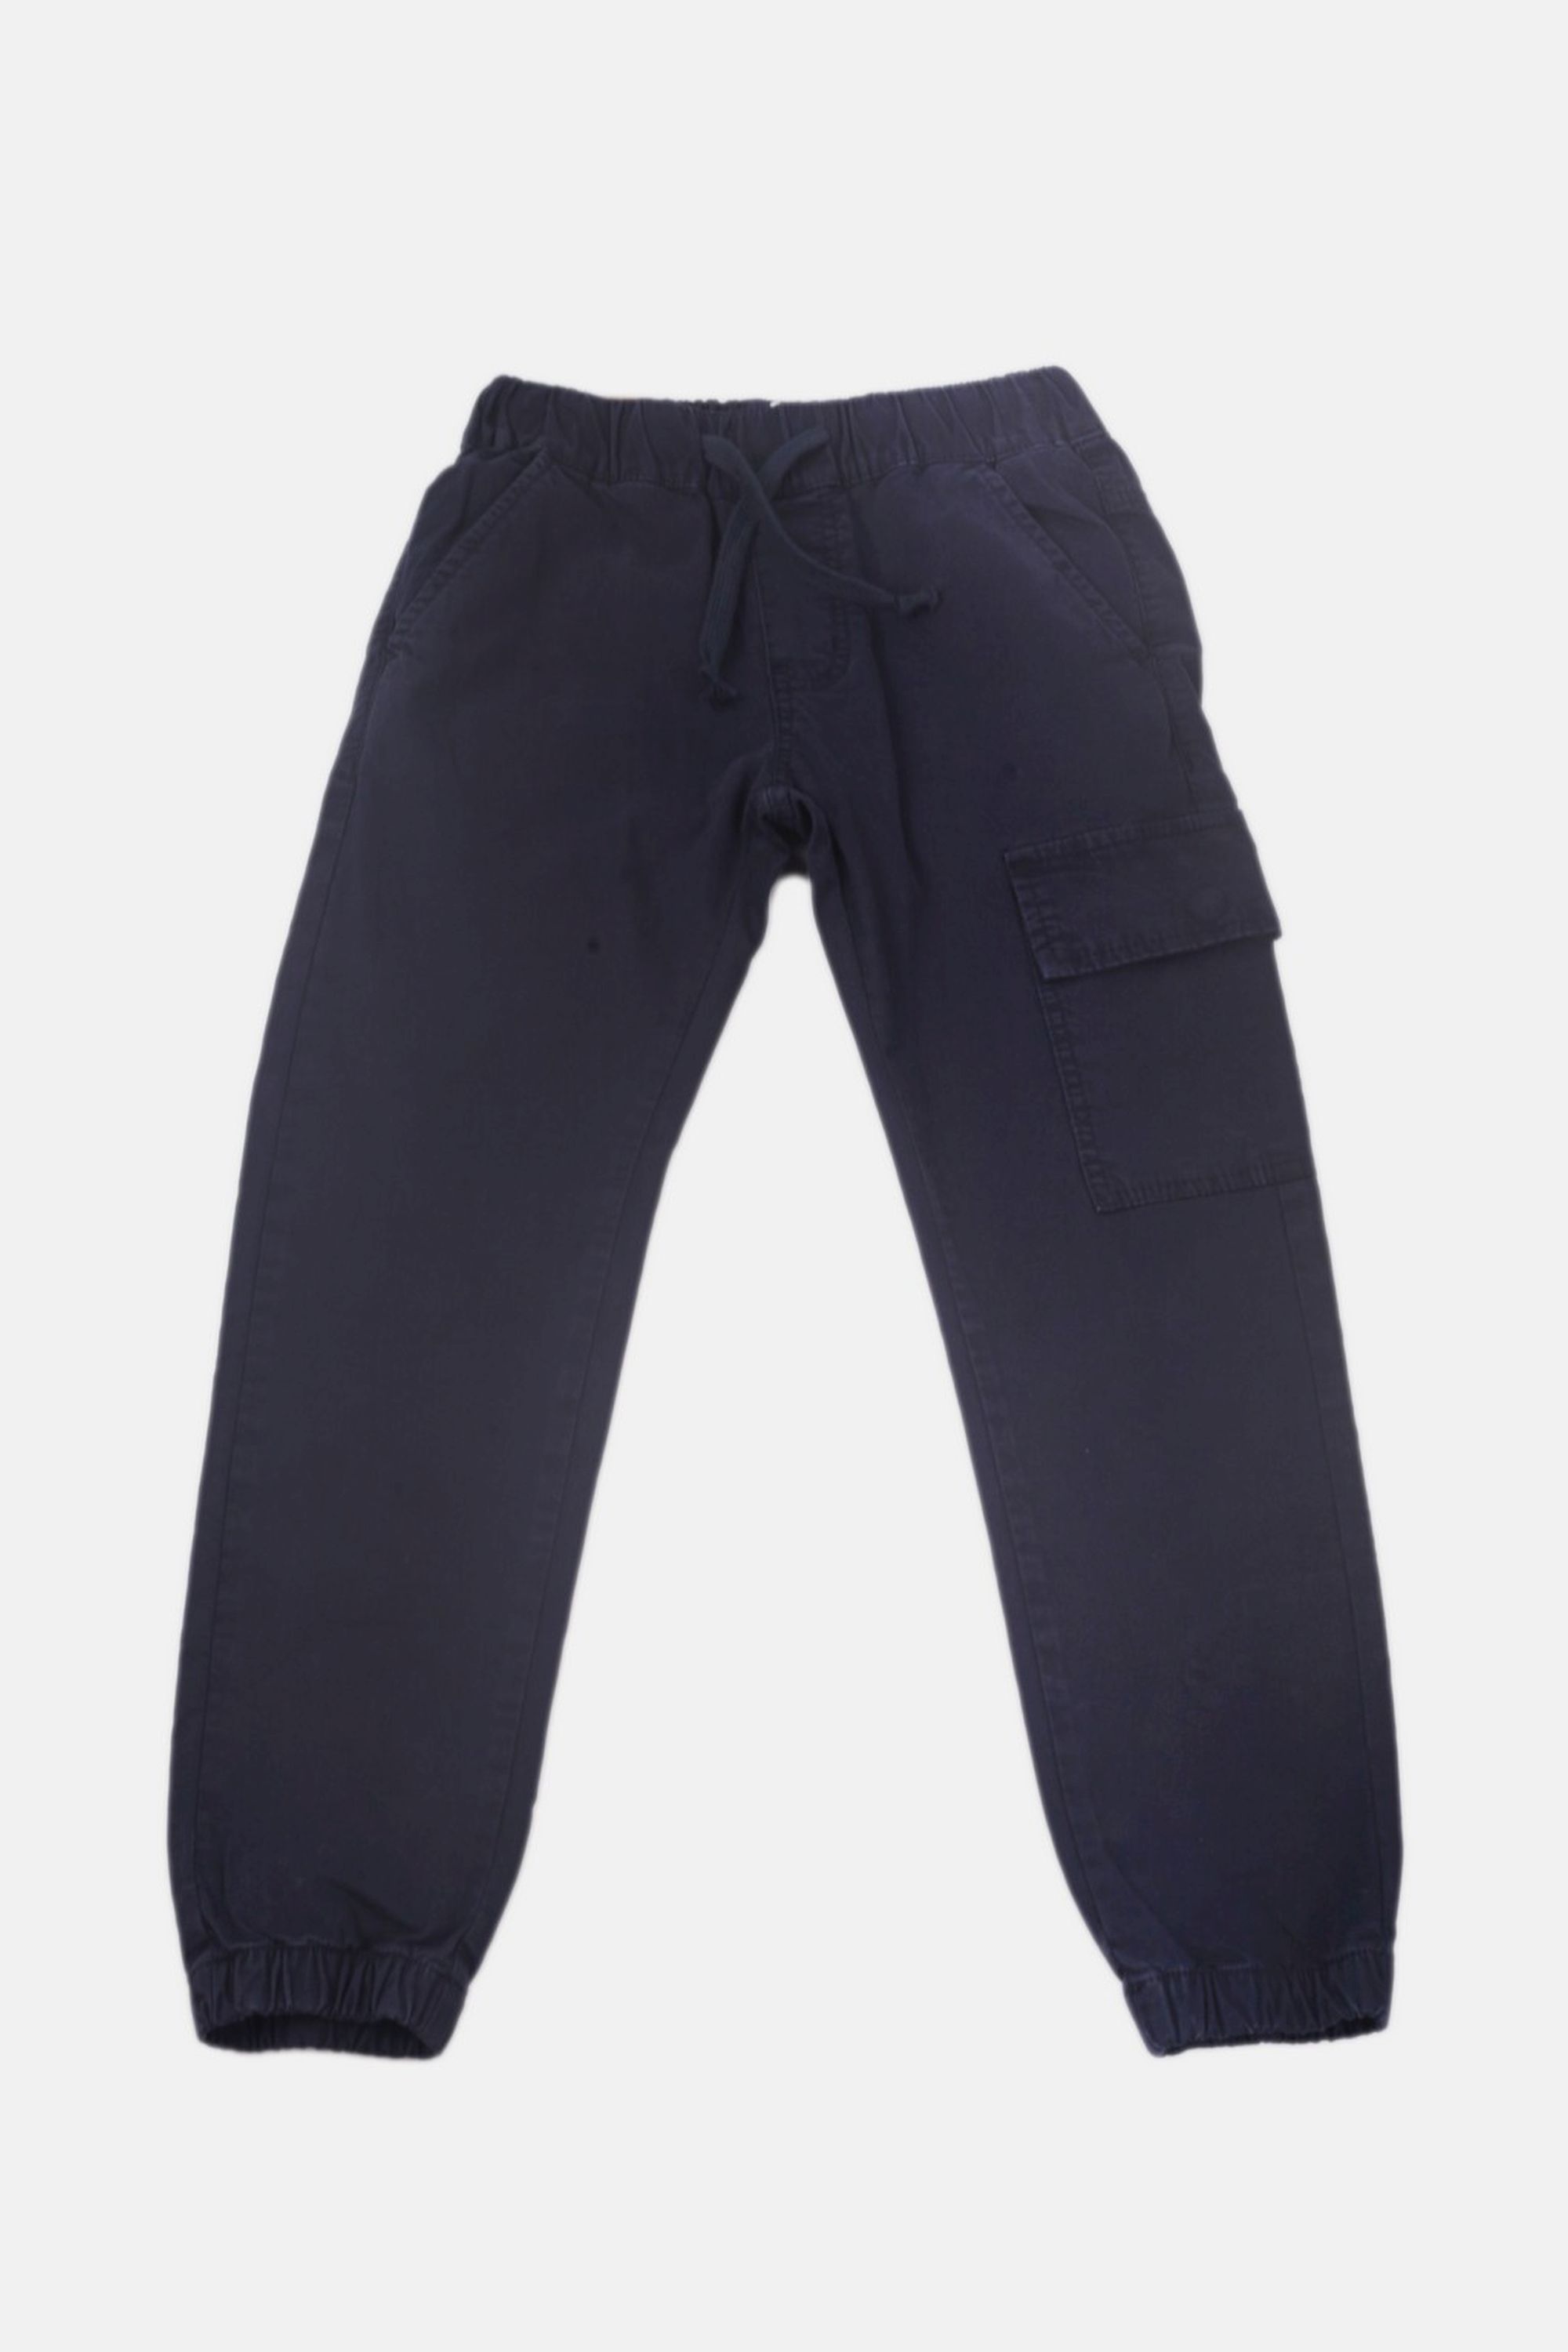 Chlapecké bavlněné kalhoty s gumou v pase/Hnědá, modrá Barva: Modrá, Velikost: vel. 6 (114/120 cm)